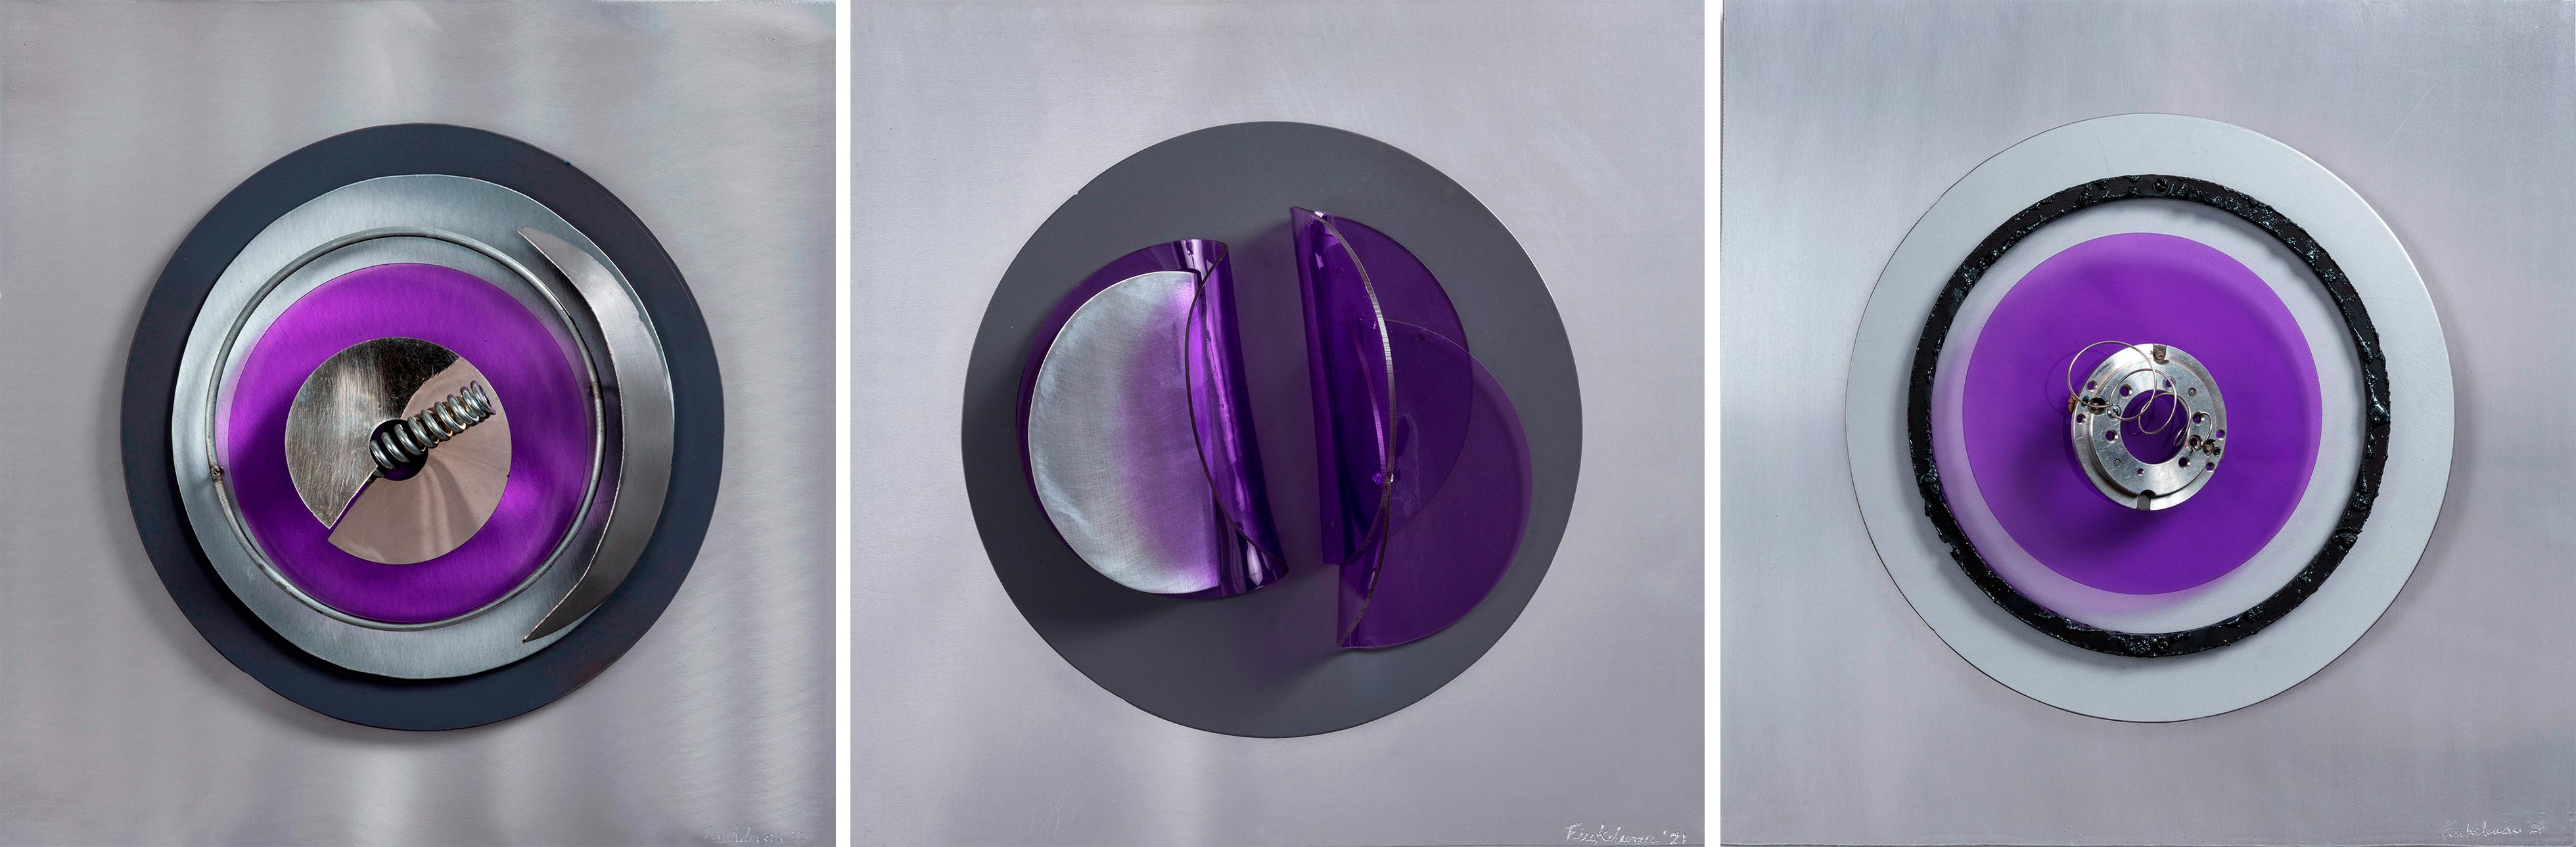 Fanny Szyller Finkelman Abstract Sculpture - Assembler Violeta N° 1, 2 and 3 .Abstract Mixed Media Wall Sculpture